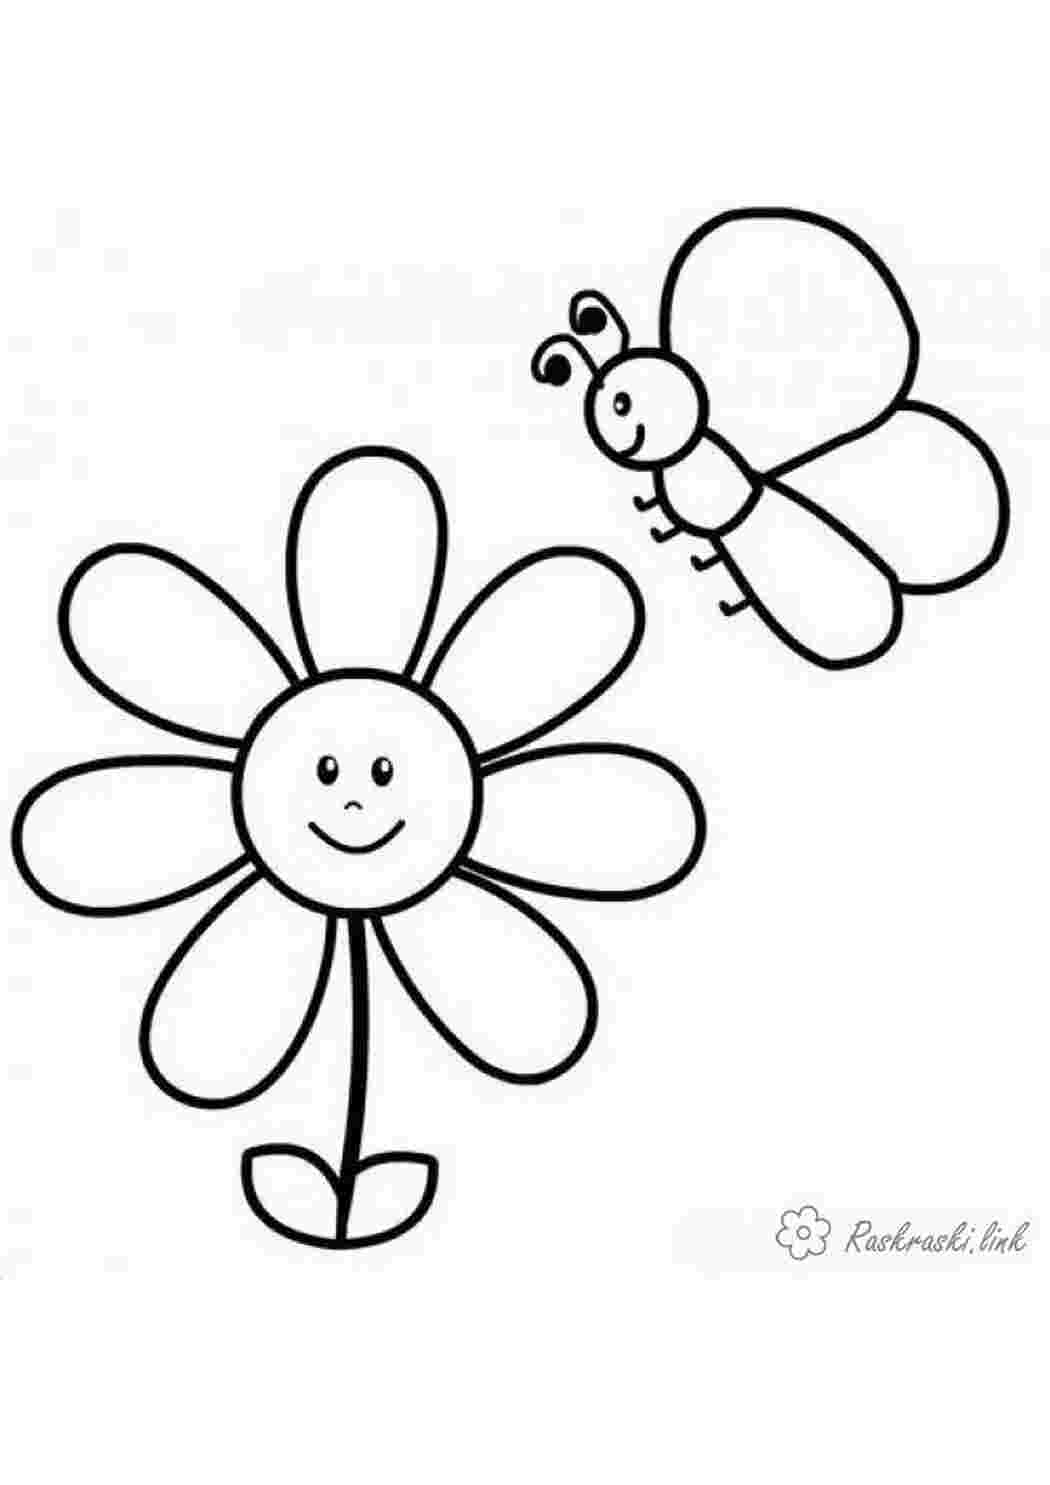 Раскраски цветок и бабочка раскраска для малышей Раскраски Простые раскраски для малышей 